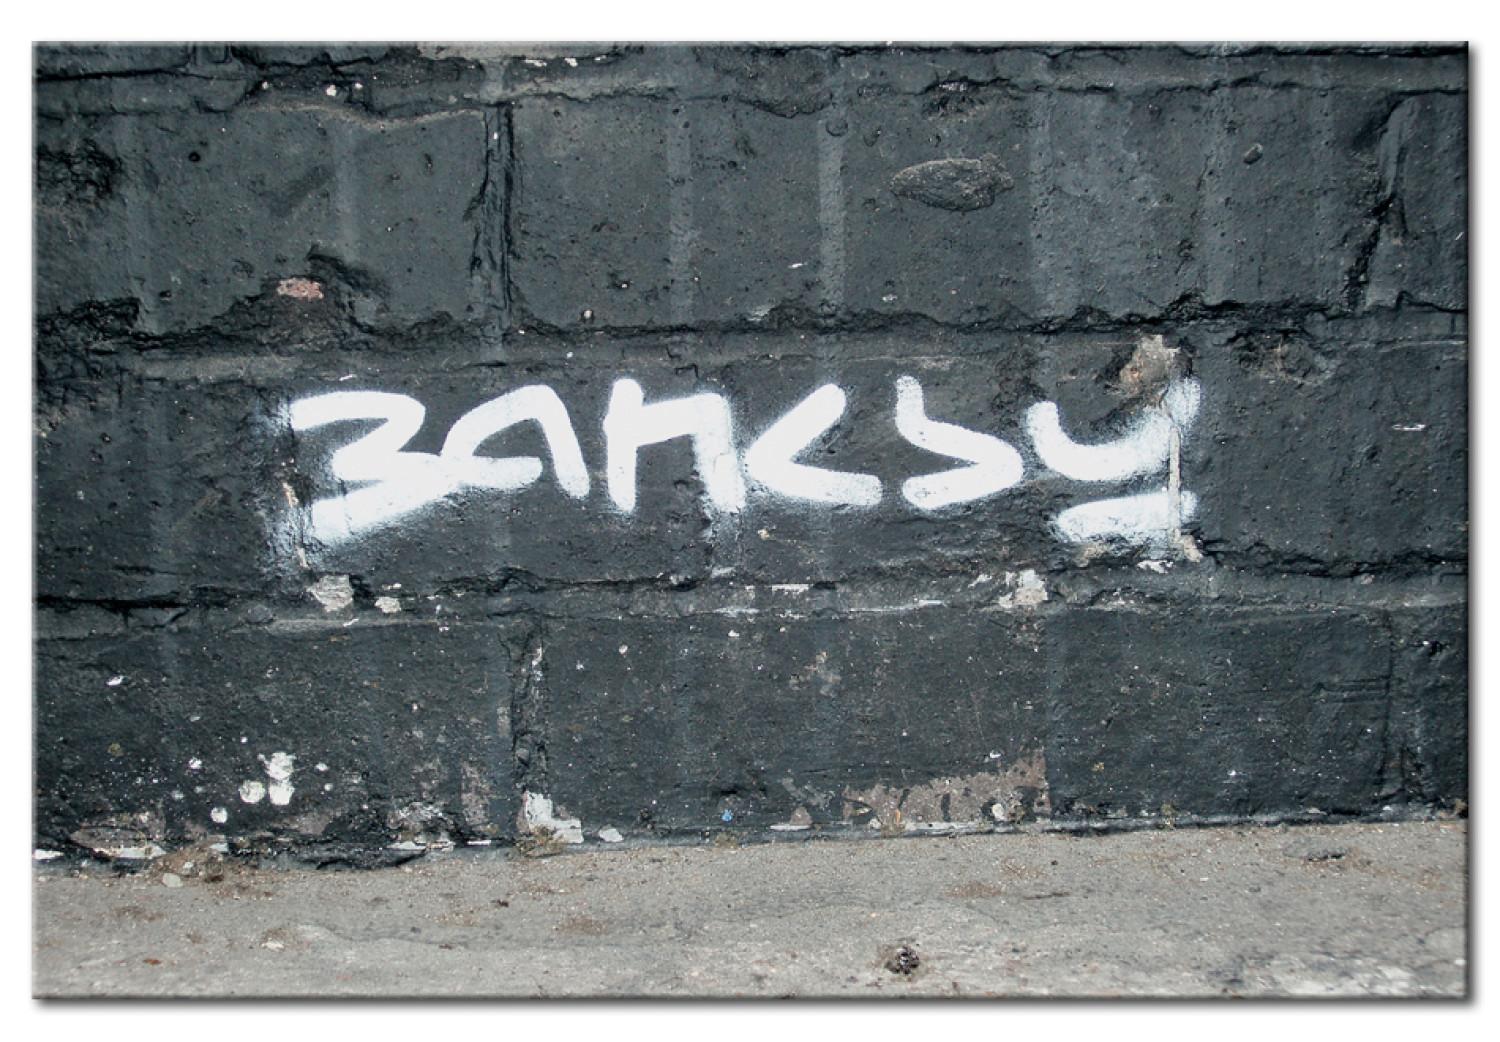 Cuadro decorativo La firma de Banksy